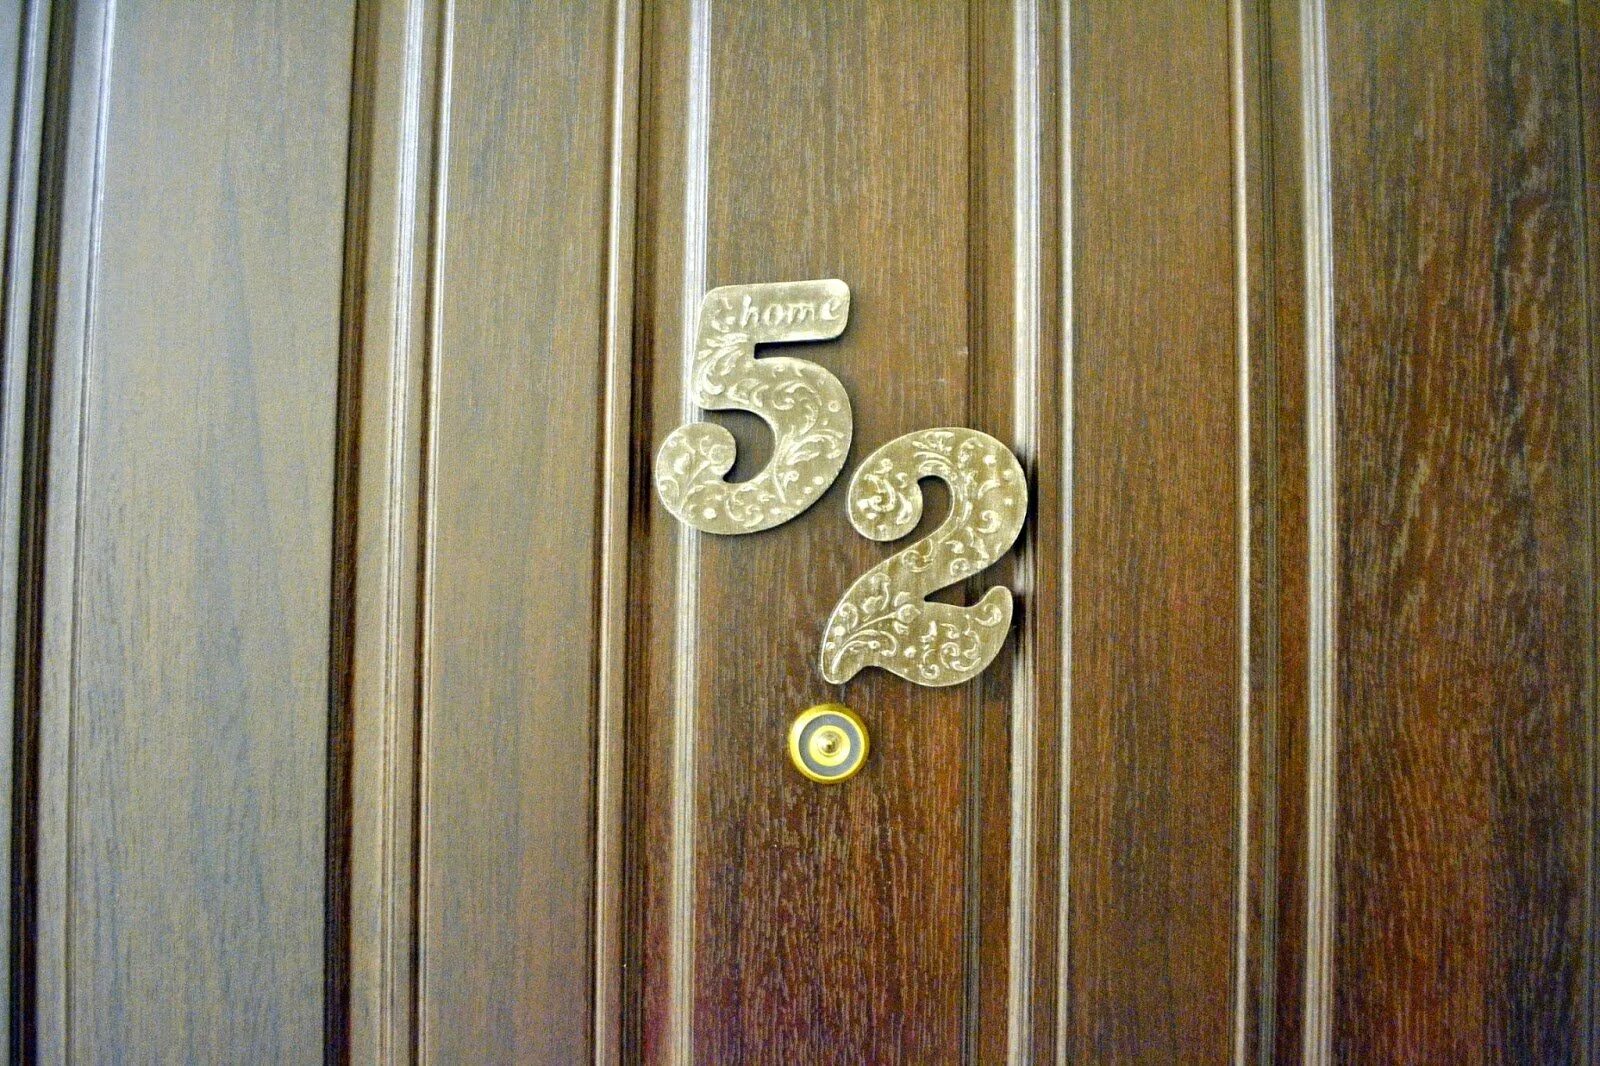 Номер квартиры на дверь. Цифры на дверь квартиры. Цифры на входную дверь. Красивые таблички на дверь квартиры.